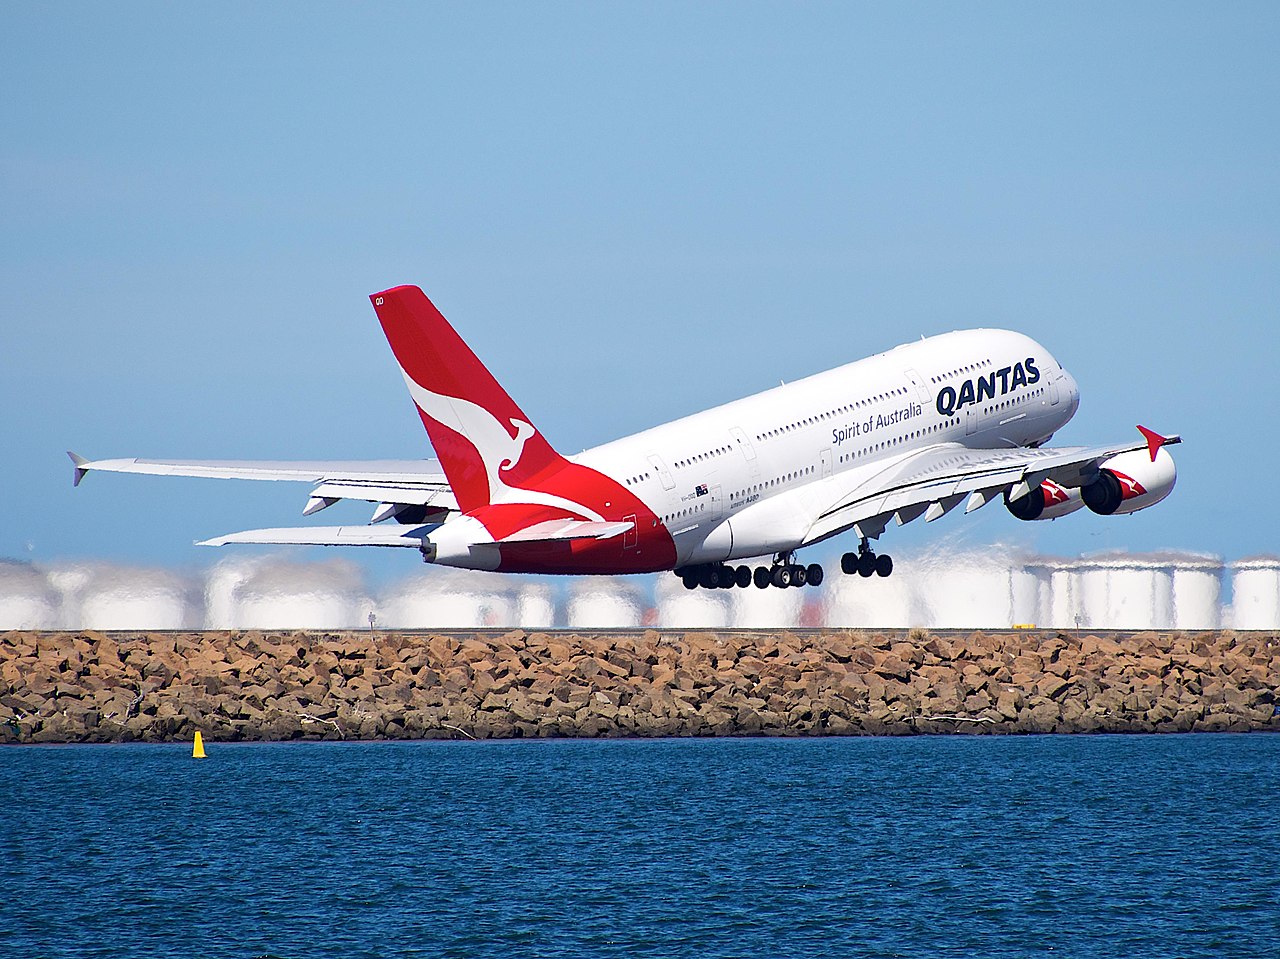 A Qantas A380 departs Sydney airport